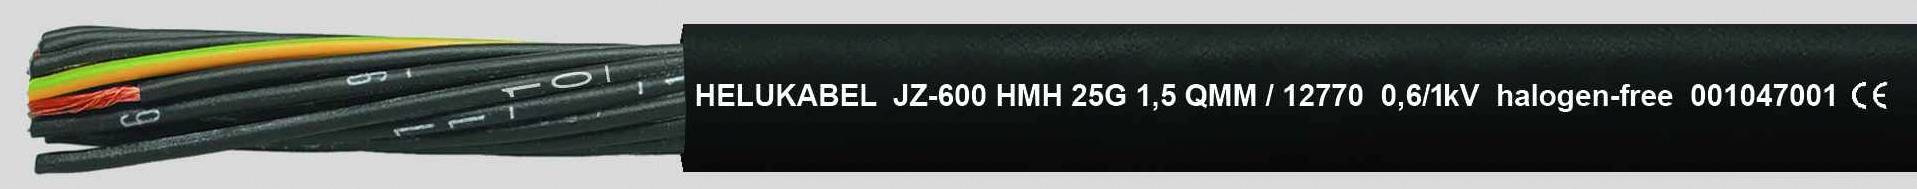 HELUKABEL JZ-600 HMH Steuerleitung 4 G 1.50 mm² Schwarz 12762-1000 1000 m